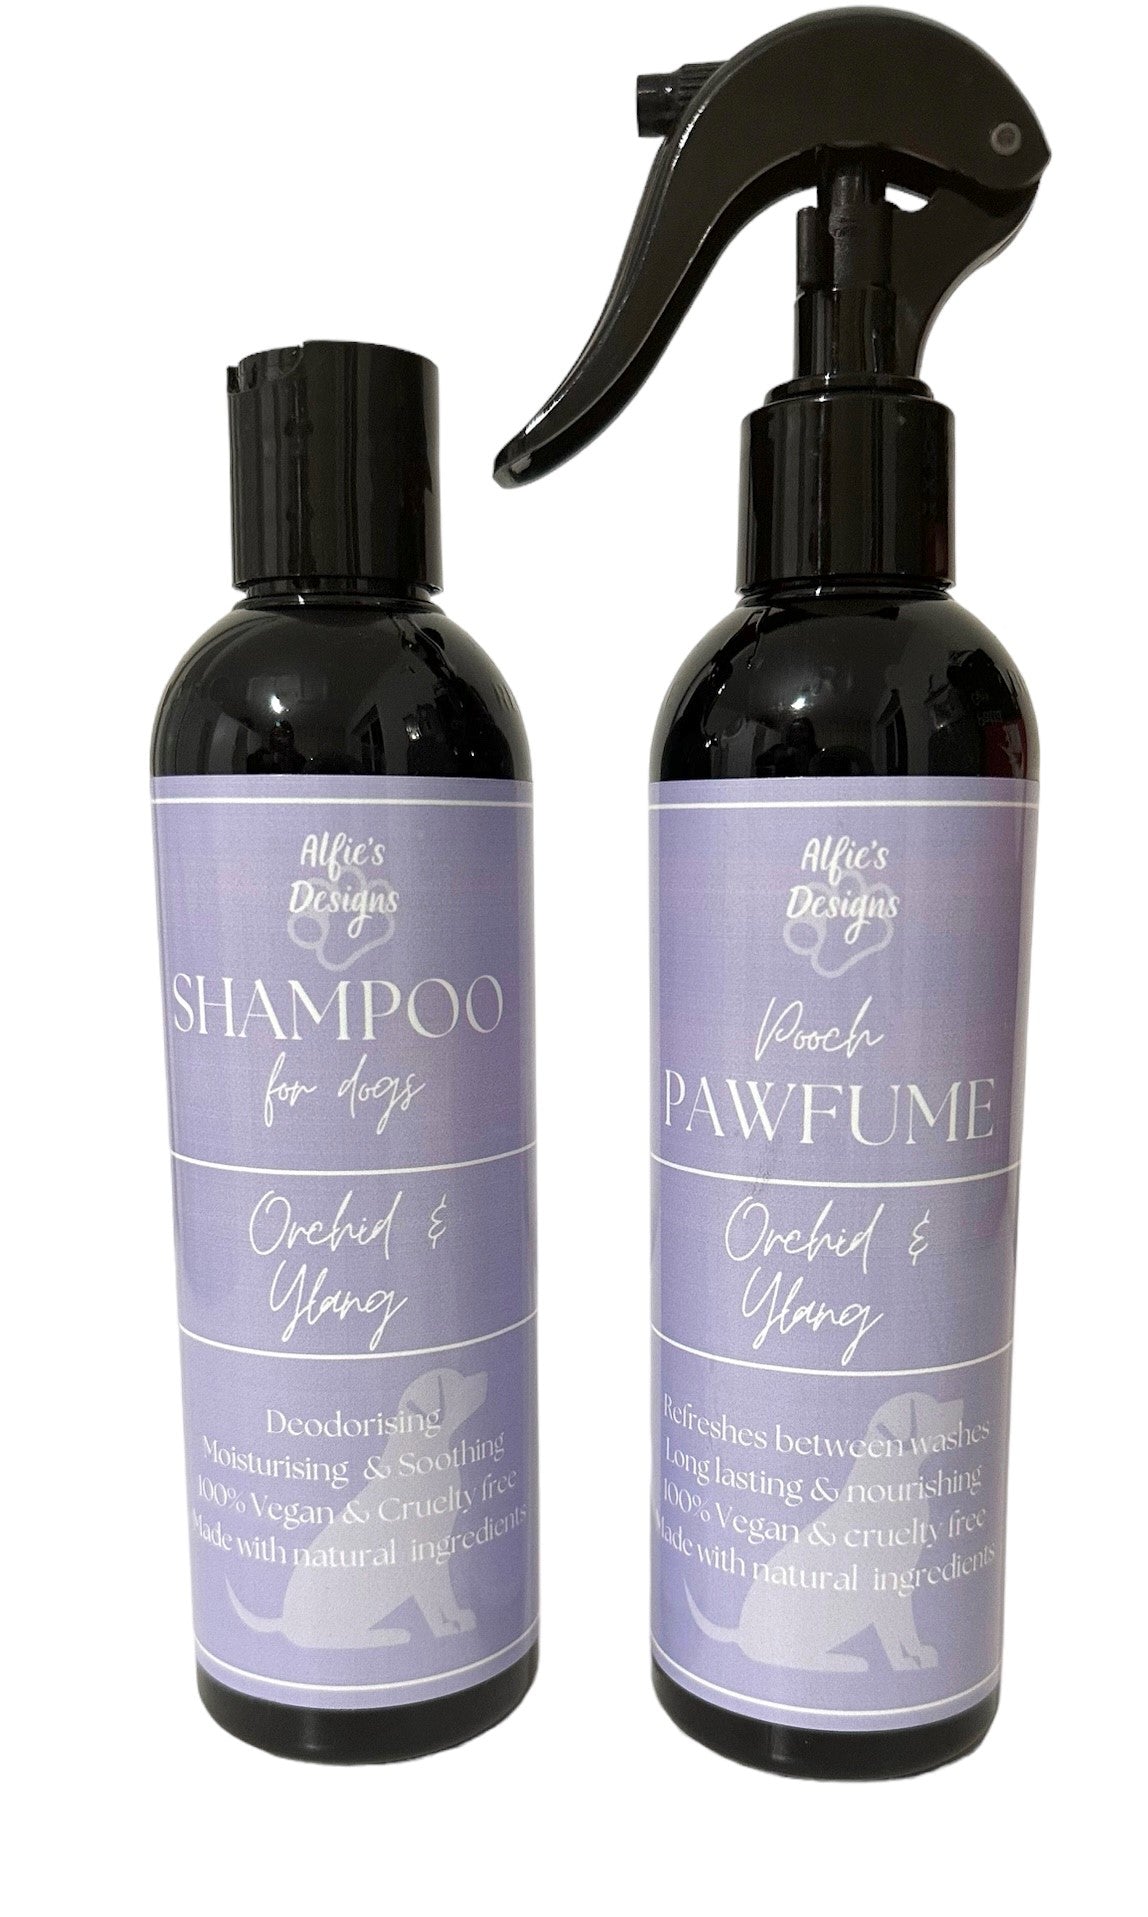 Orchid & Ylang Dog Shampoo